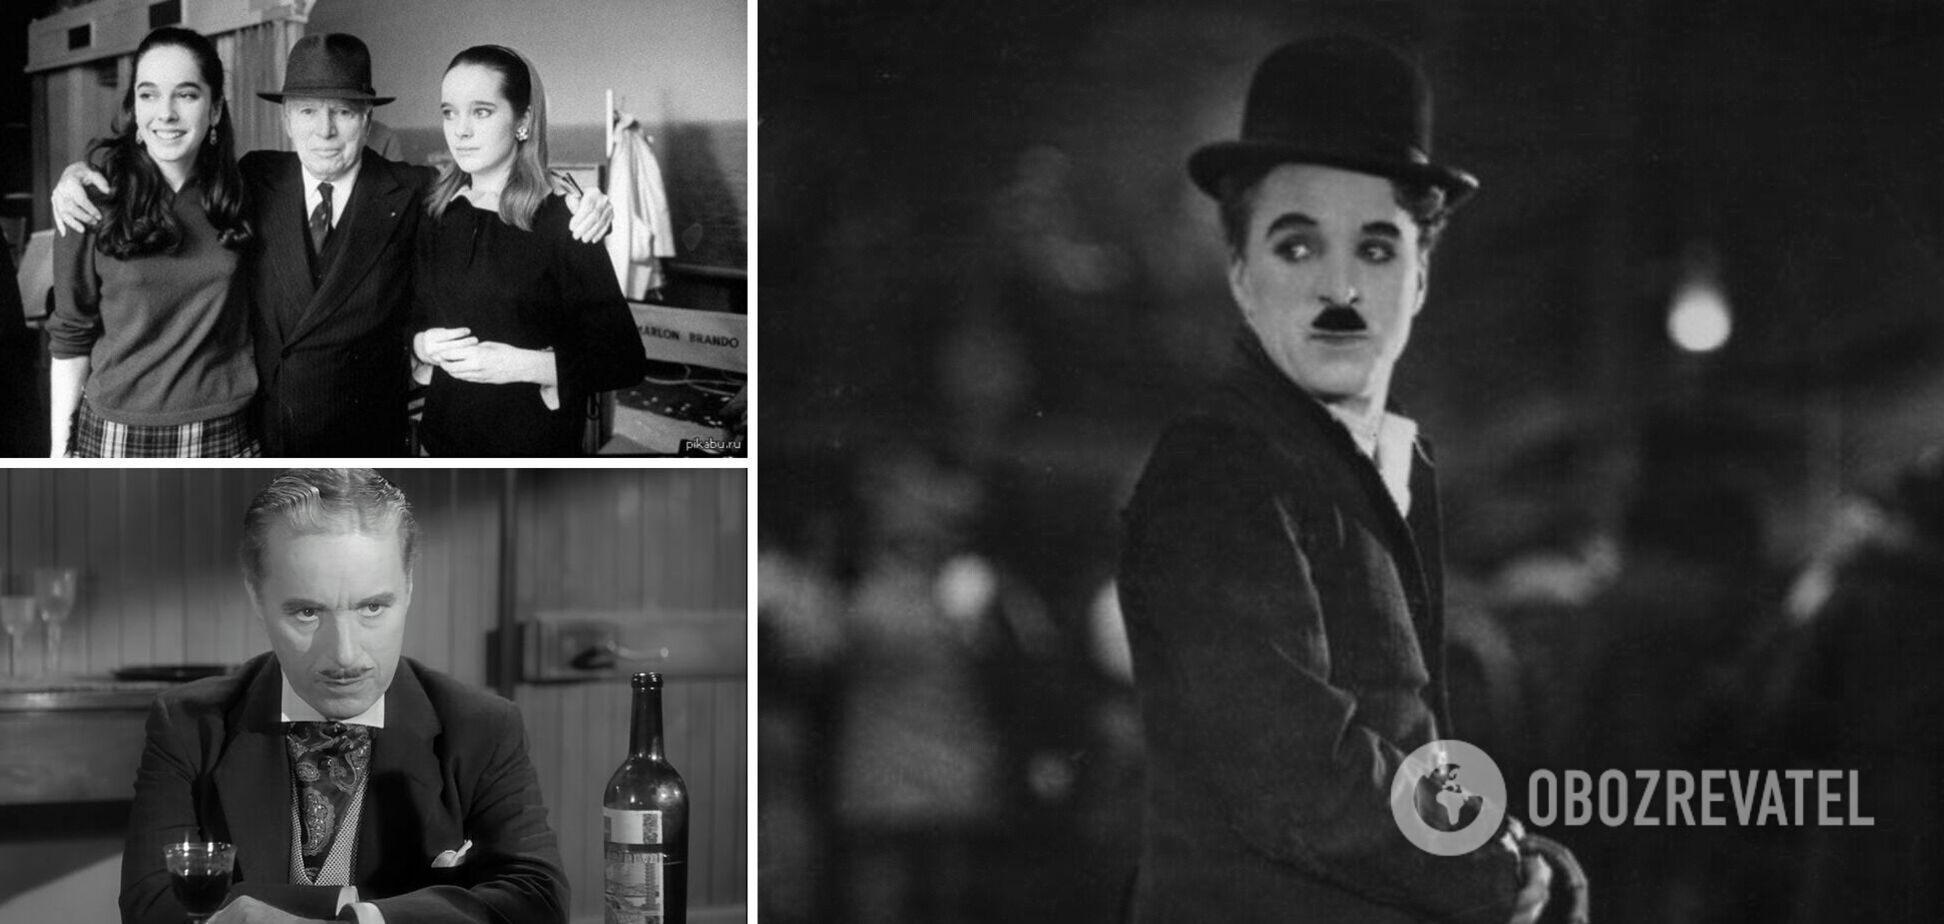 Чарли Чаплин был легендарным актером, продюсером и режиссером